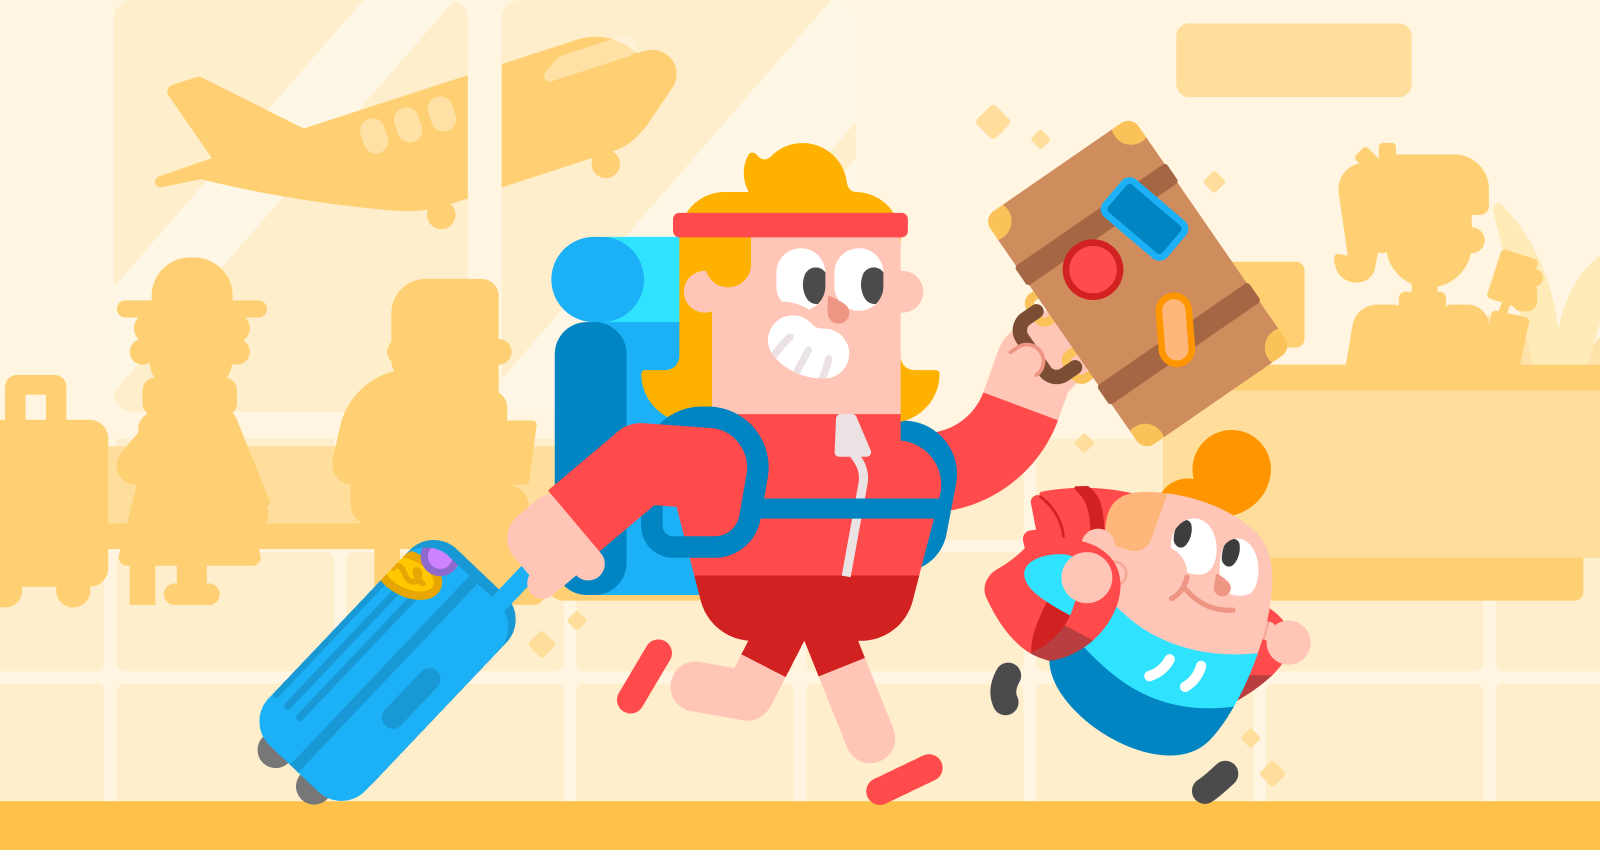 Dibujo de los personajes de Duolingo Eddy y Junior corriendo con alegría en un aeropuerto. Eddy lleva una mochila, arrastra un bolso con ruedas con una mano y lleva una maleta en la otra. Junior corre a su lado con una mochila. En el fondo pueden verse otros turistas y sus equipajes, un empleado detrás de un mostrador y un avión que despega.